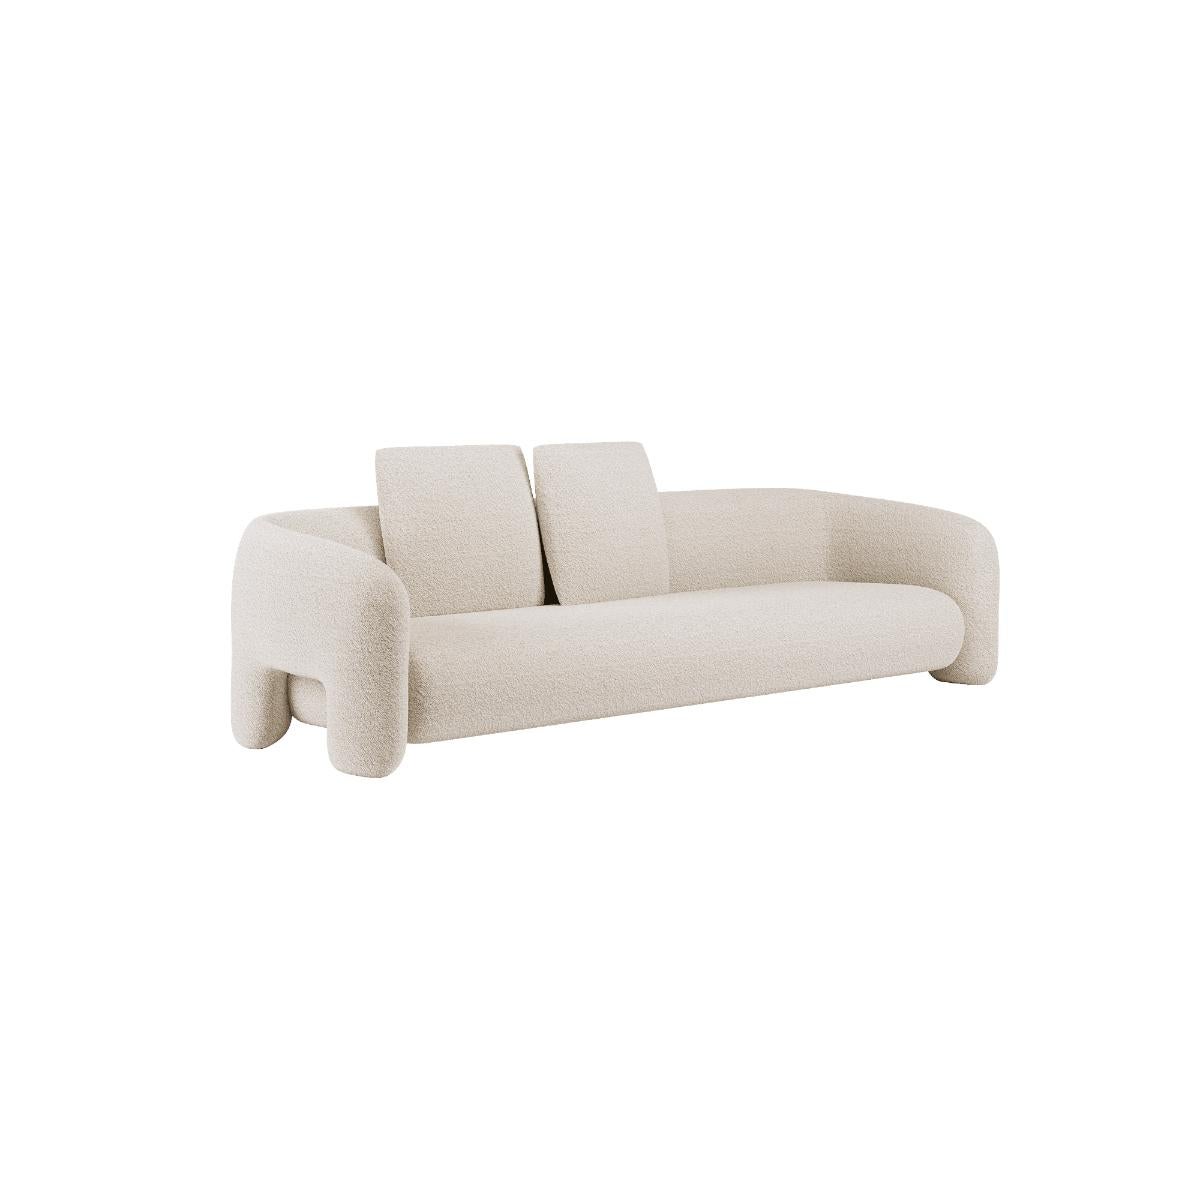 Grand canapé audacieux de Mohdern
Dimensions : L 320 x P 102 x H 76 cm
MATERIAL : Tissu, Bouclé


Bold est une collection de meubles raffinés conçue et produite par la marque Mohdern. La série comprend le fauteuil et la chaise longue, le canapé en